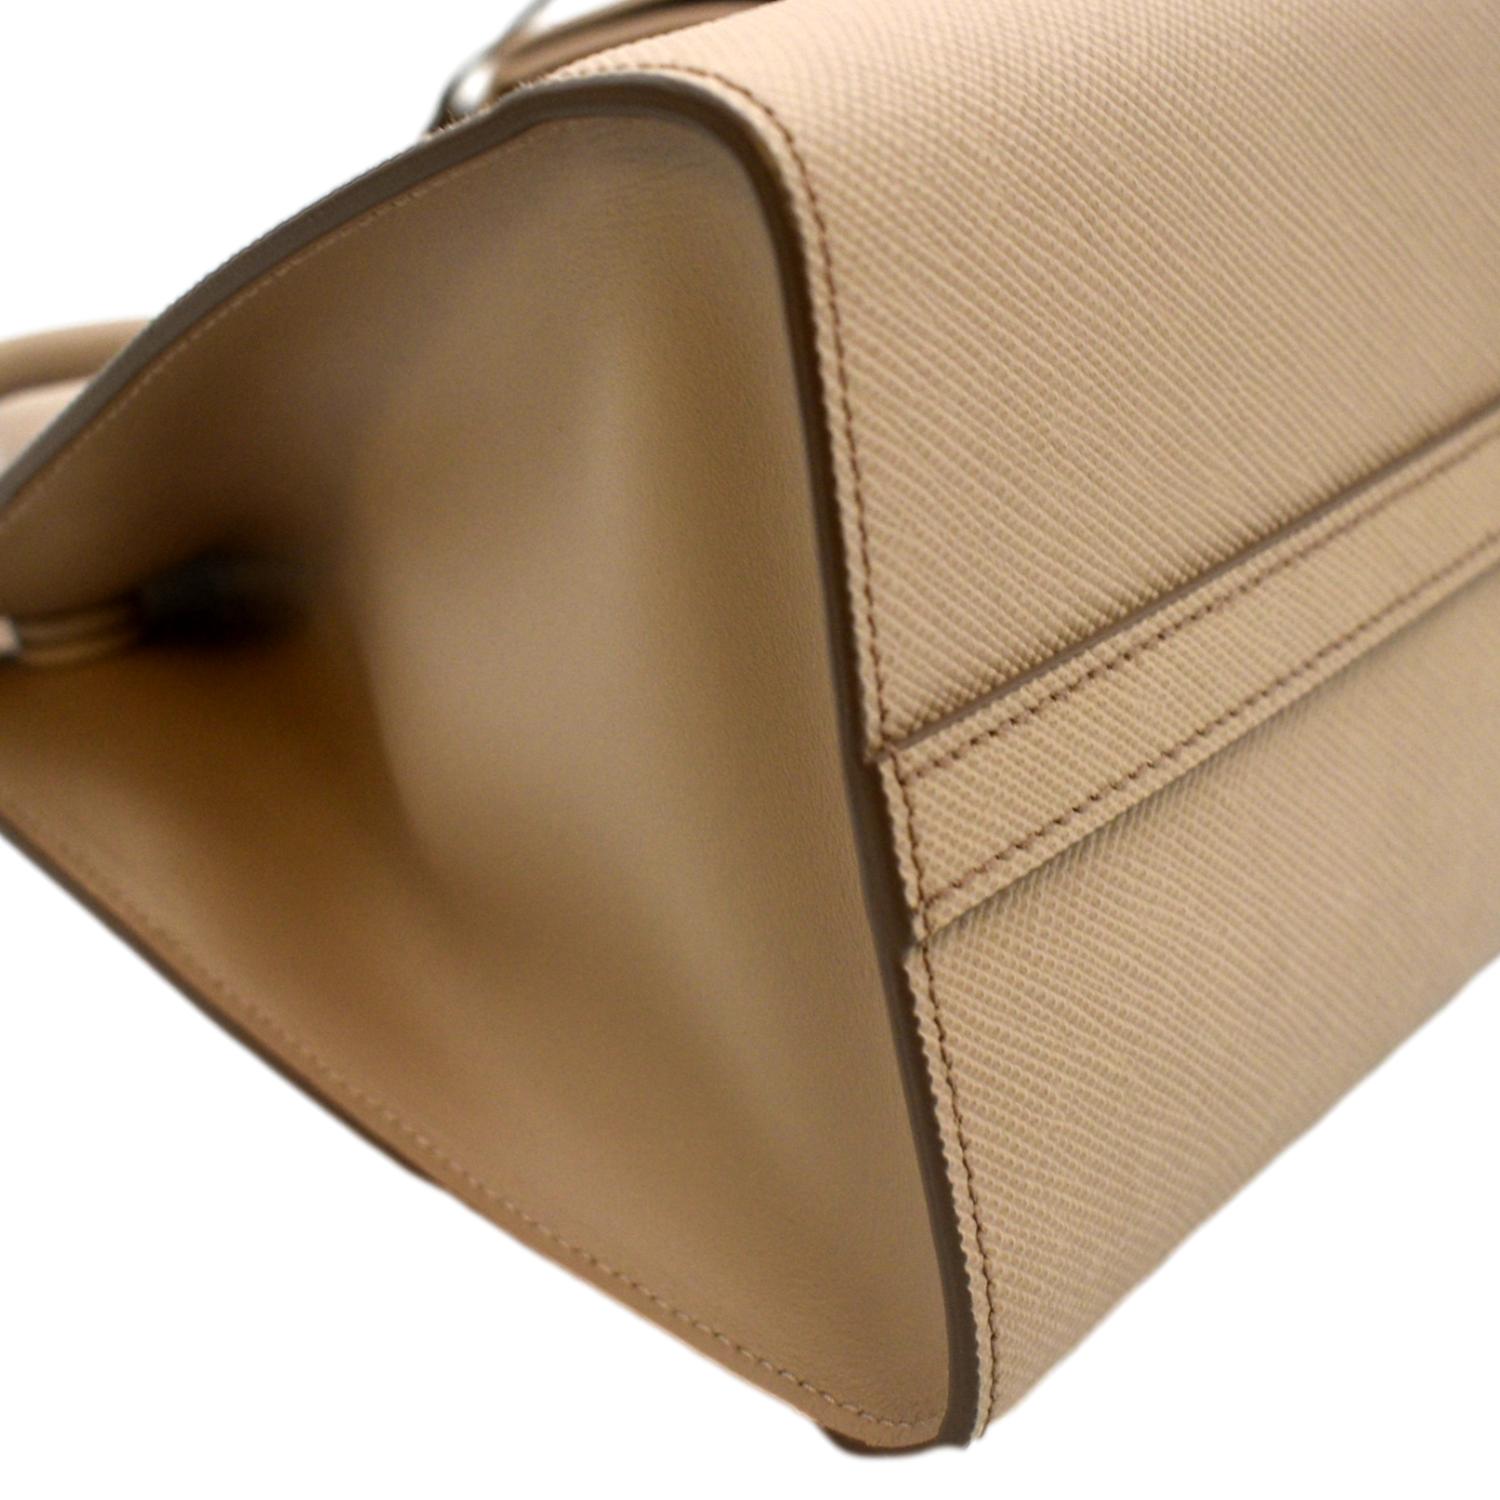 Prada Monochrome small Saffiano bag